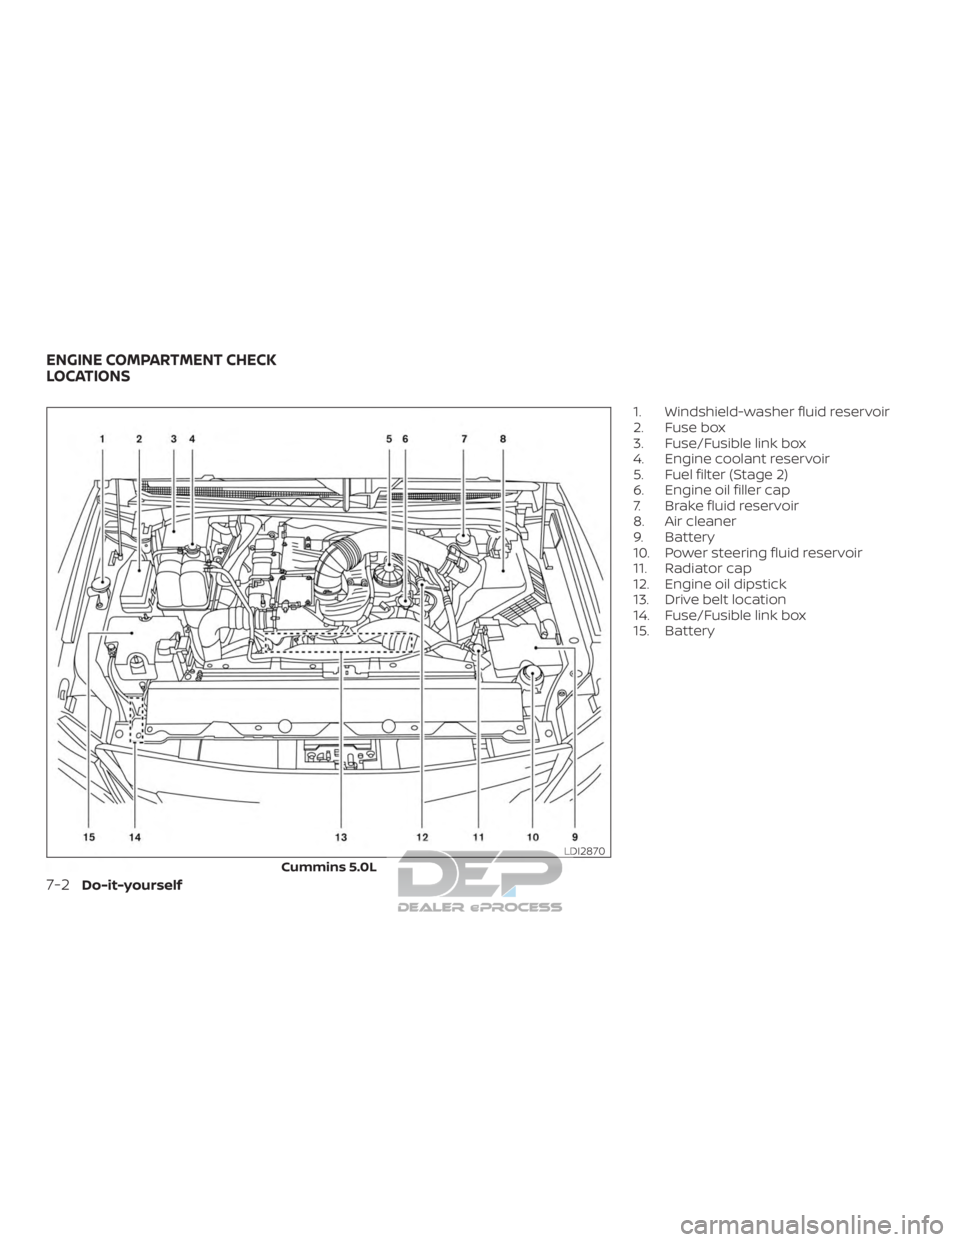 NISSAN TITAN 2019  Owner´s Manual 1. Windshield-washer fluid reservoir
2. Fuse box
3. Fuse/Fusible link box
4. Engine coolant reservoir
5. Fuel filter (Stage 2)
6. Engine oil filler cap
7. Brake fluid reservoir
8. Air cleaner
9. Batte